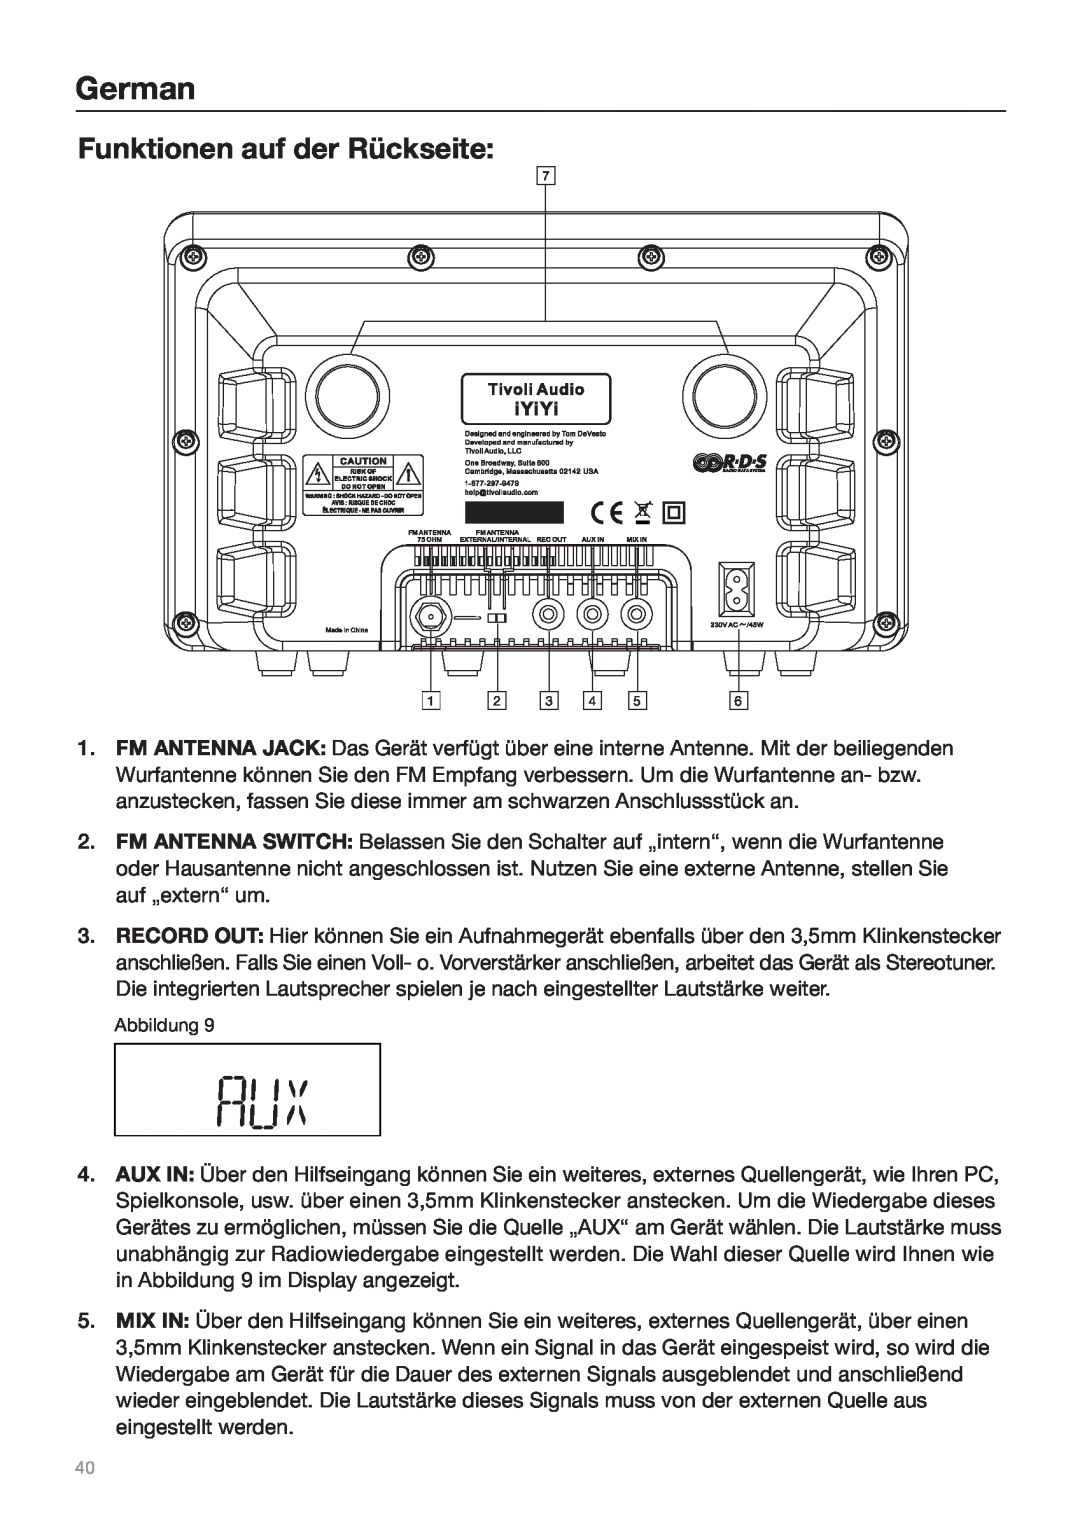 Tivoli Audio Sound System owner manual Funktionen auf der Rückseite, German 